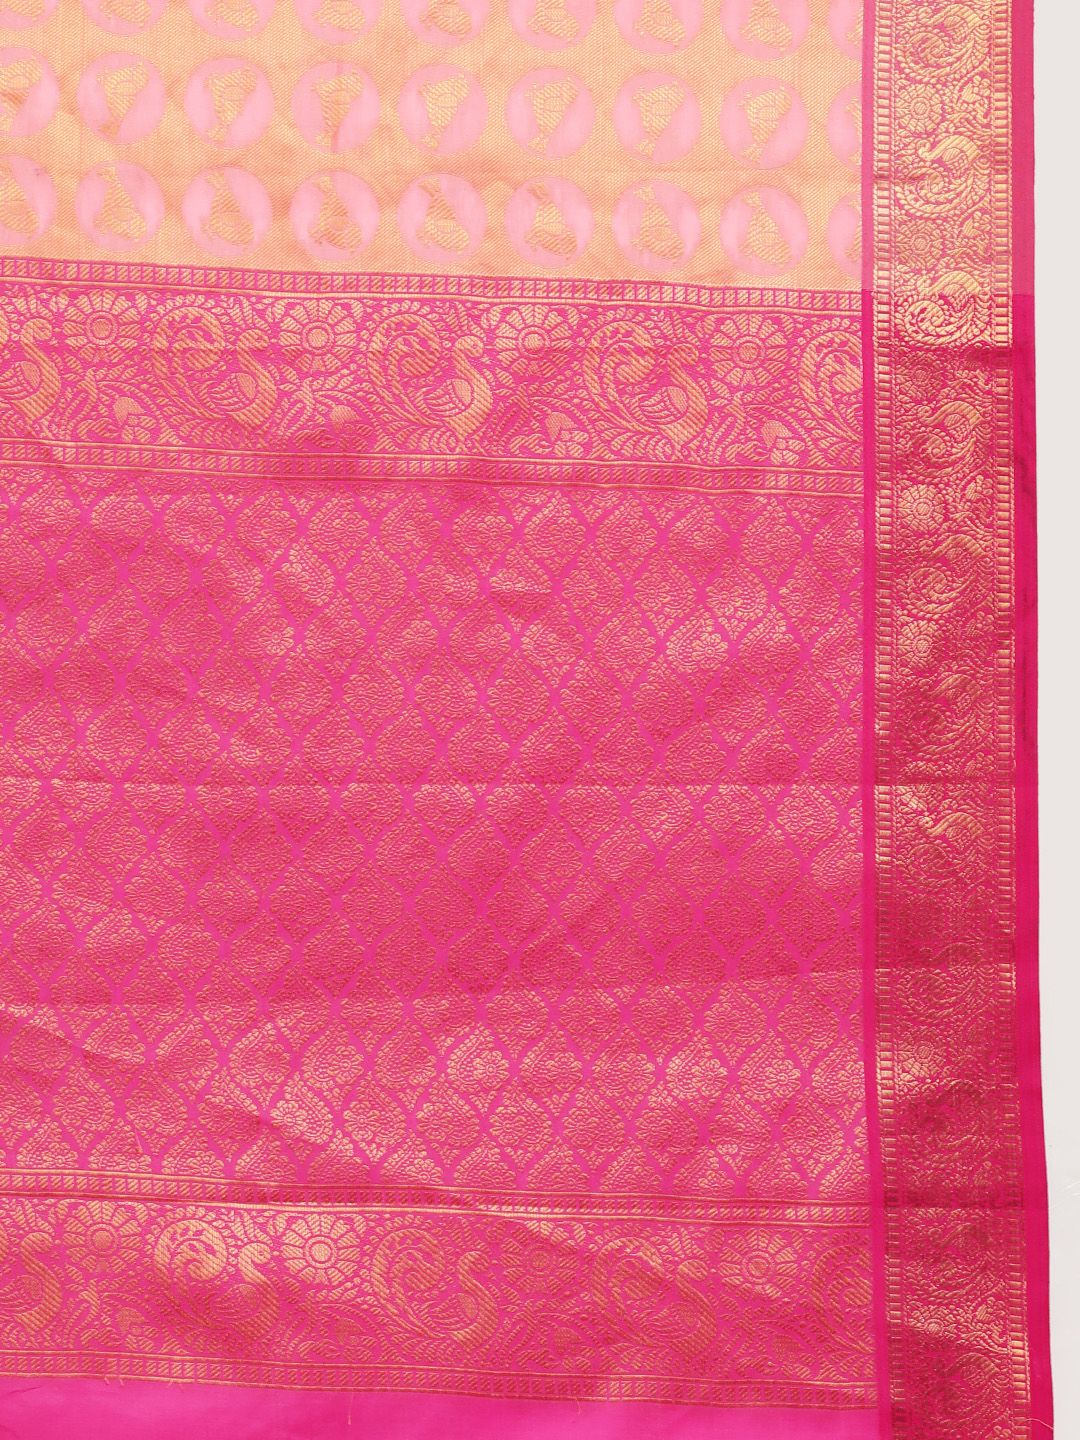 peach best kanchipuram pattu south indian saree for woman